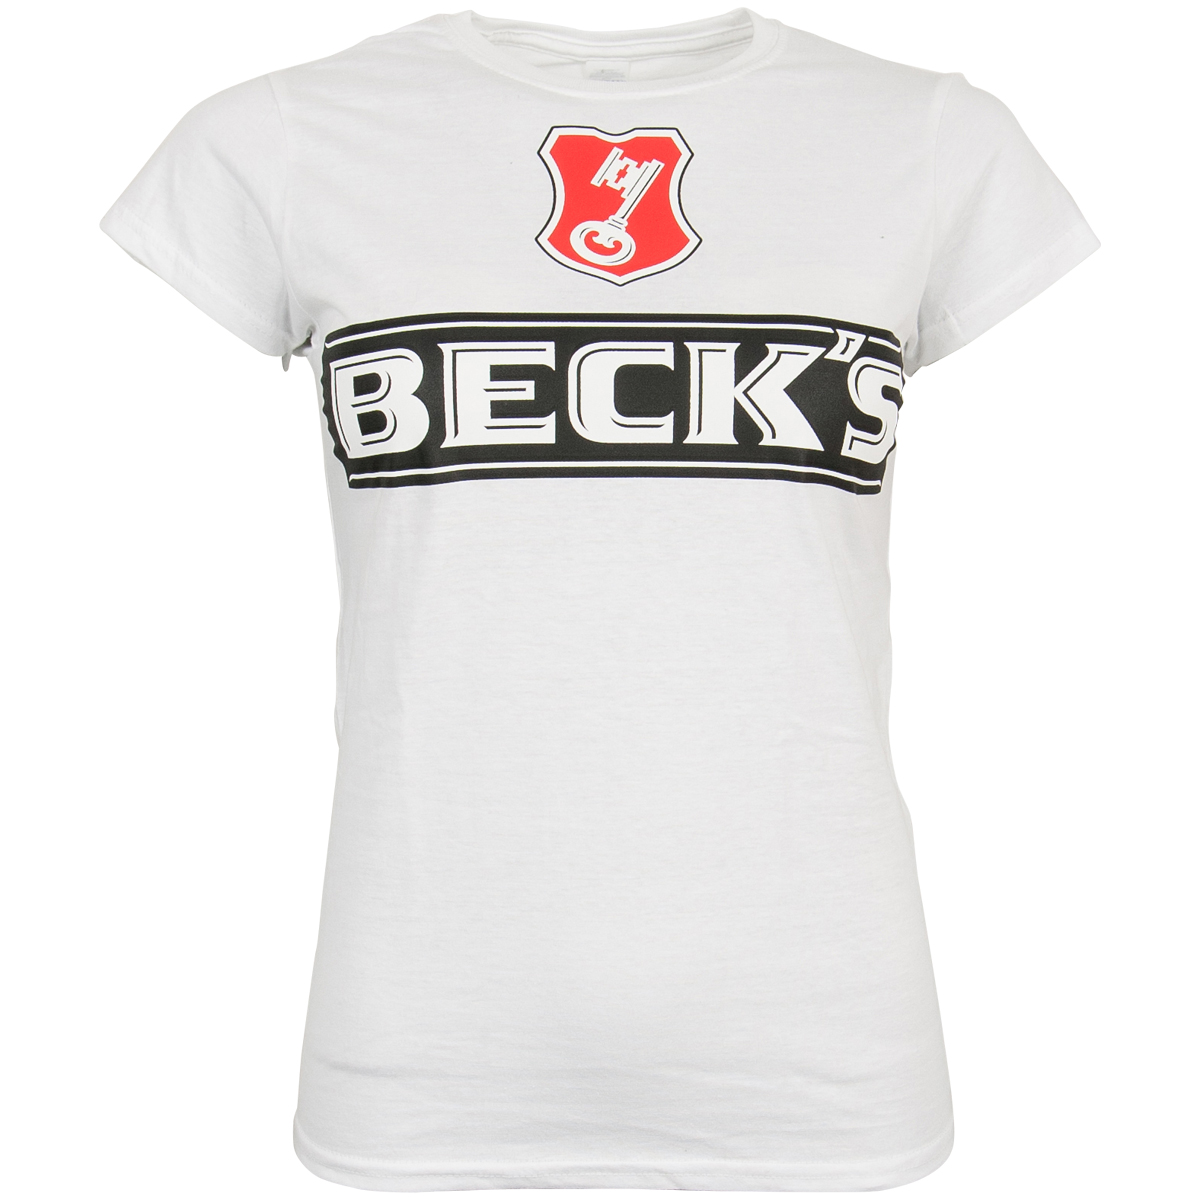 Beck's - Ladies T-Shirt Logo - white